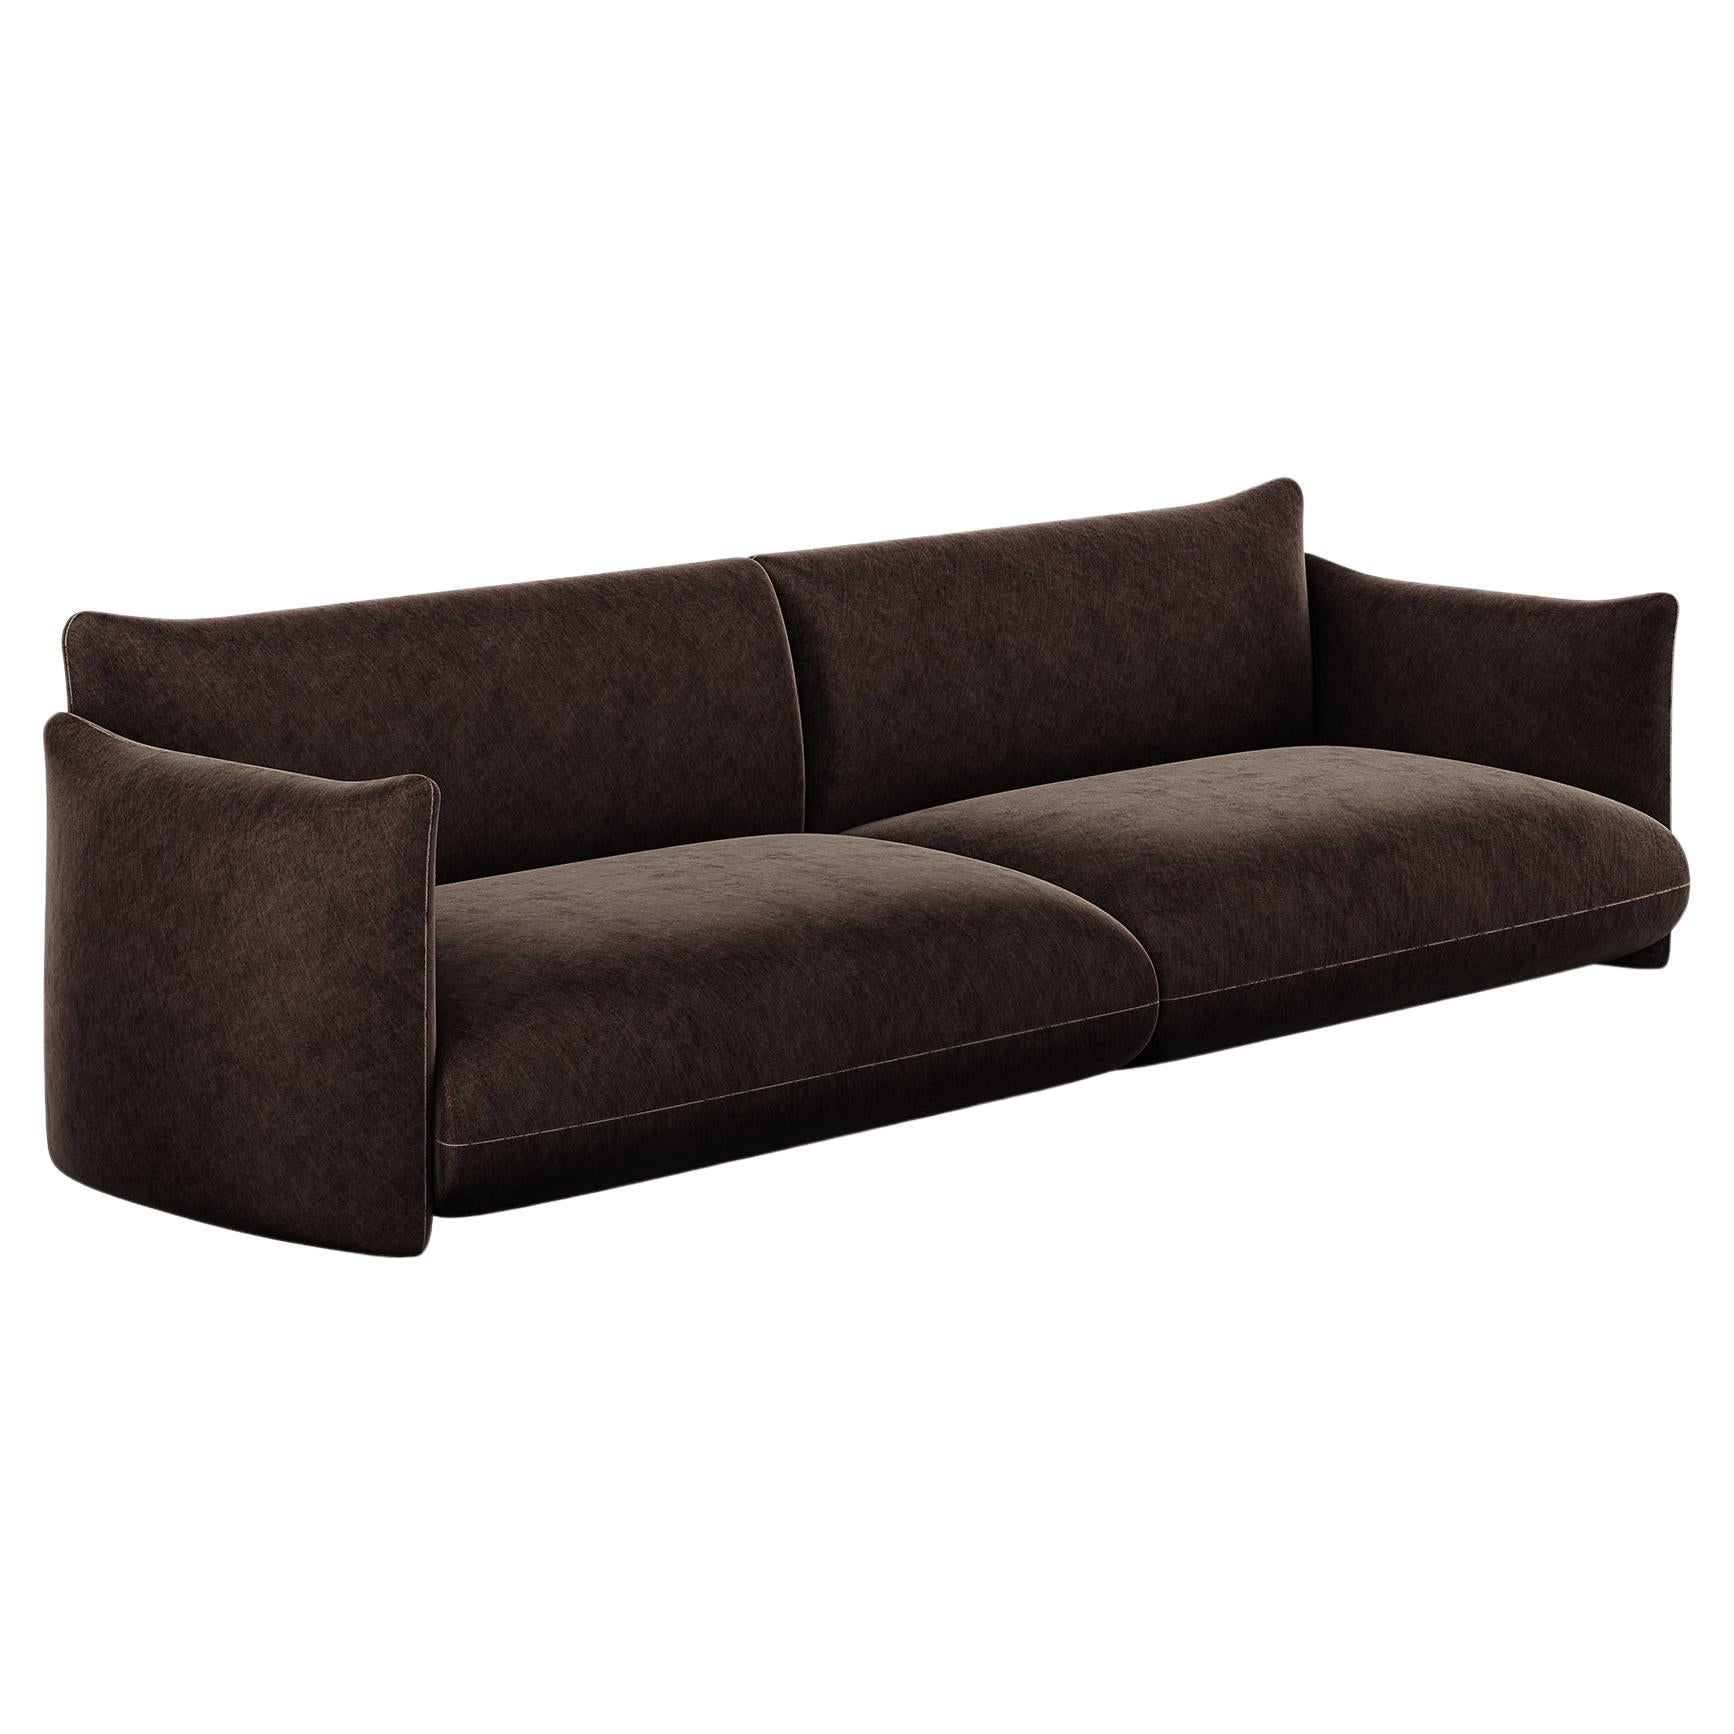 The Moderns Modernity Sofa Upholstered in Dark Brown Chocolat Velvet